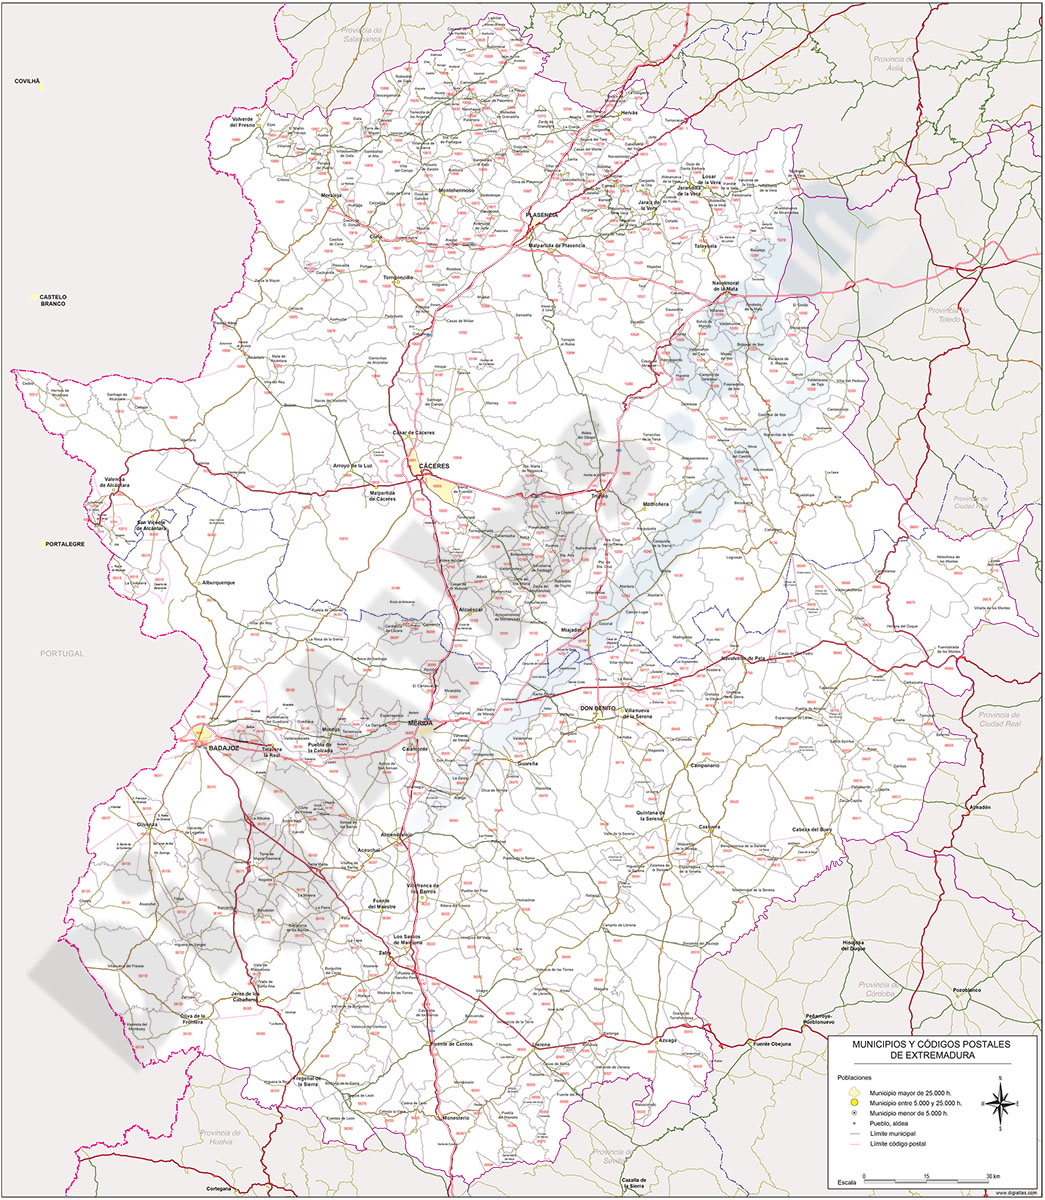 Extremadura - Mapa autonómico con municipios, códigos postales y carreteras